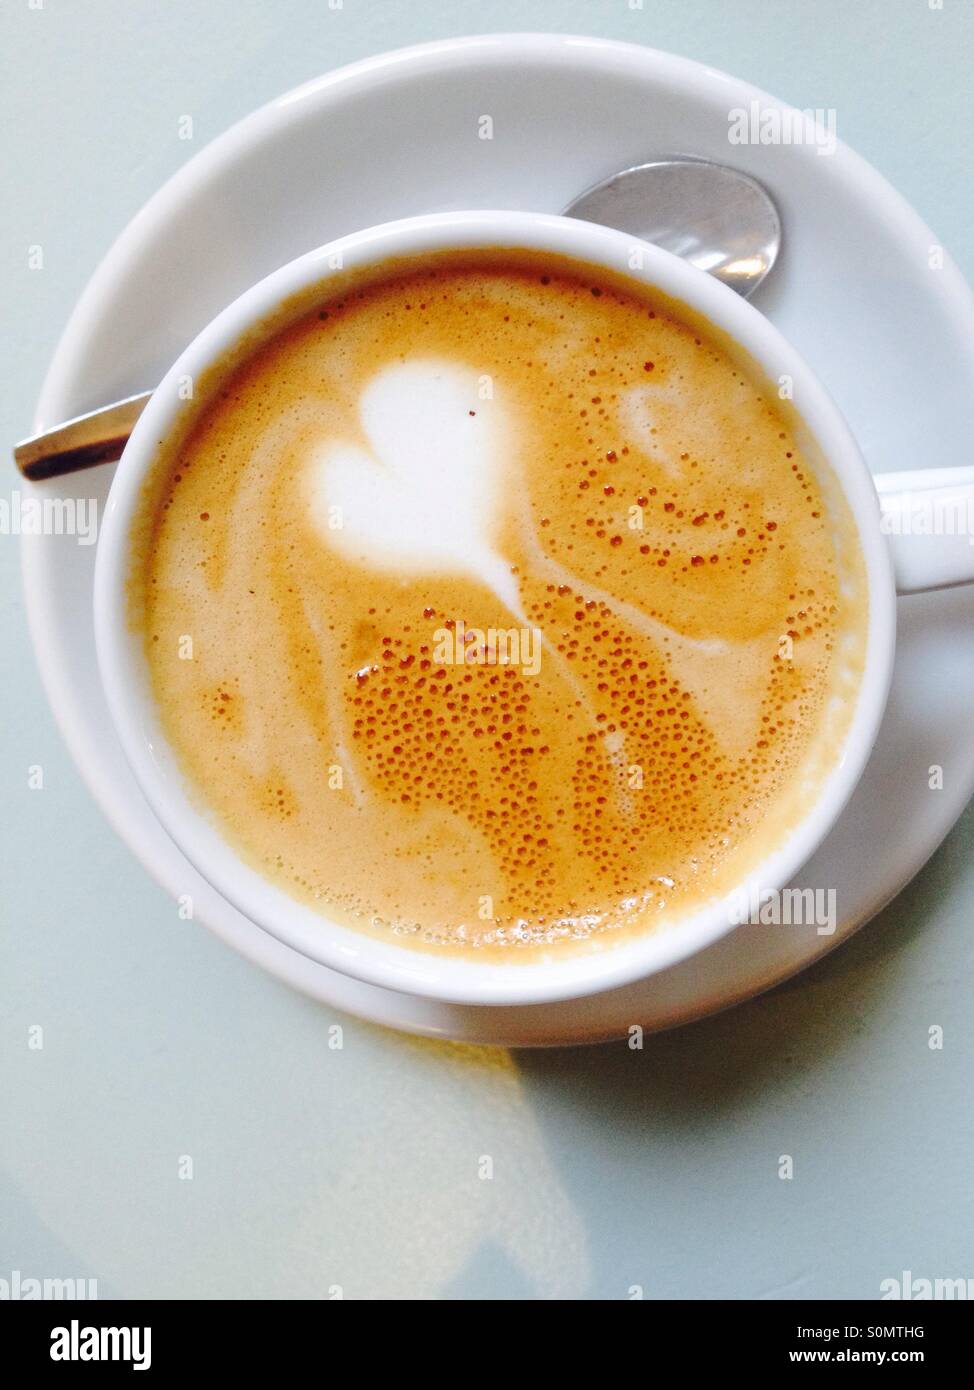 Cuore sulla parte superiore di una tazza di caffè per illustrare amorevole caffè o amore Foto Stock